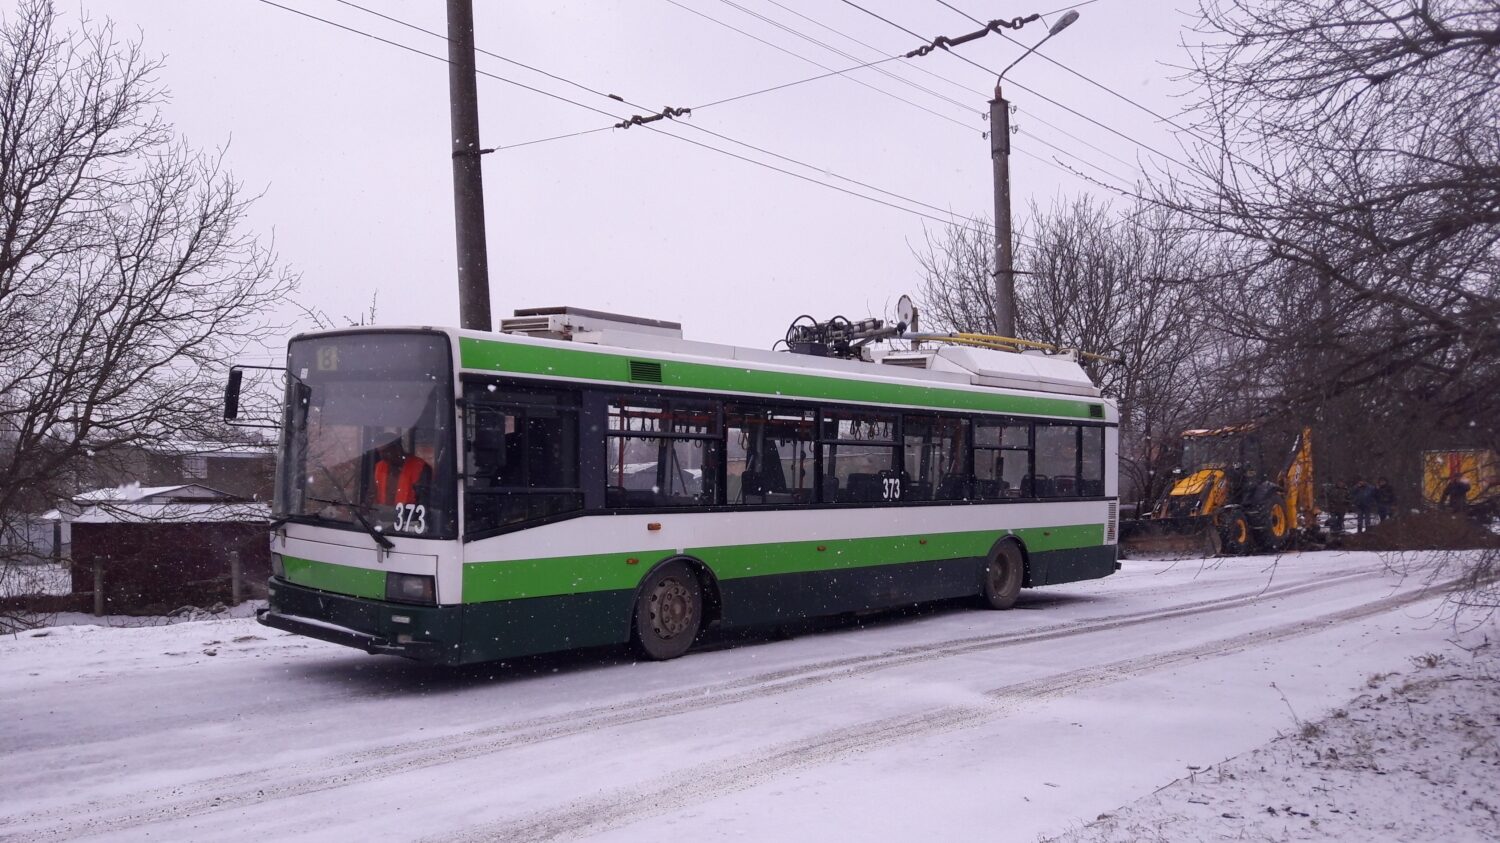 Na snímku ze 4. 1. 2019 vidíme ex-plzeňský vůz e. 481, přečíslovaný v ukrajinském městě na 373. (foto: autor)